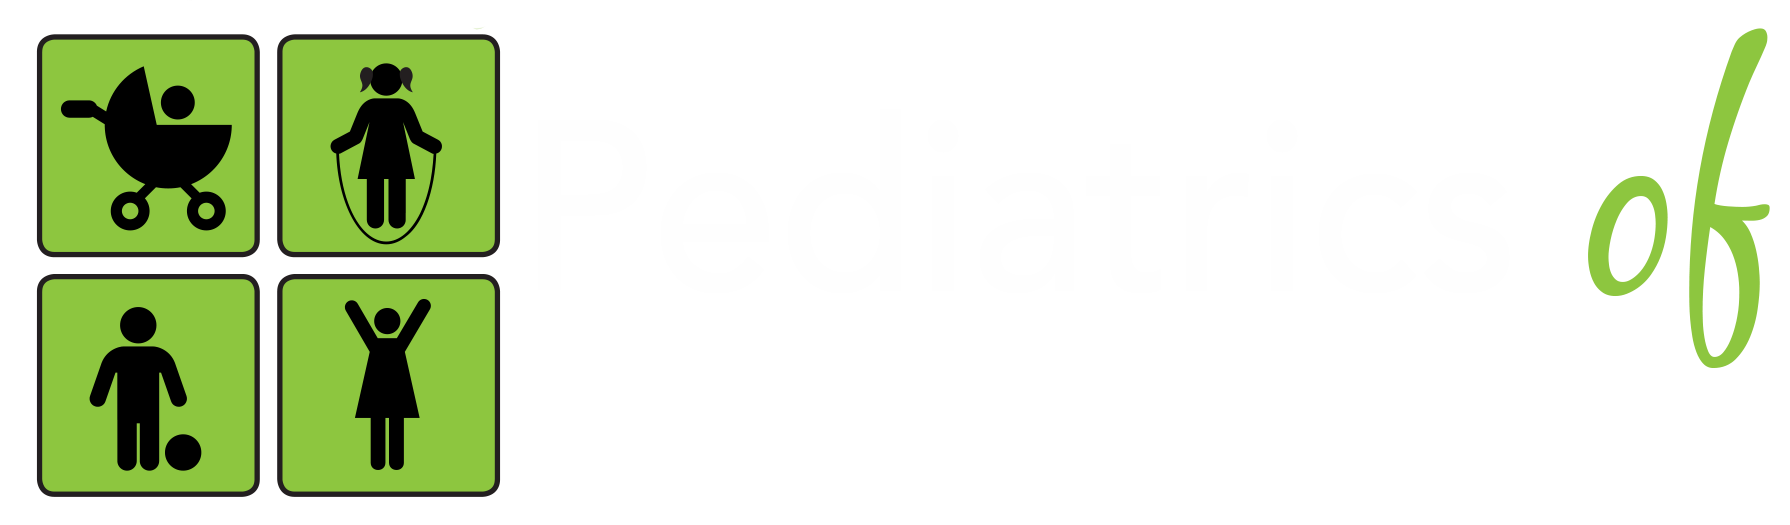 Pediatría en el suroeste de Houston con un pie de página.